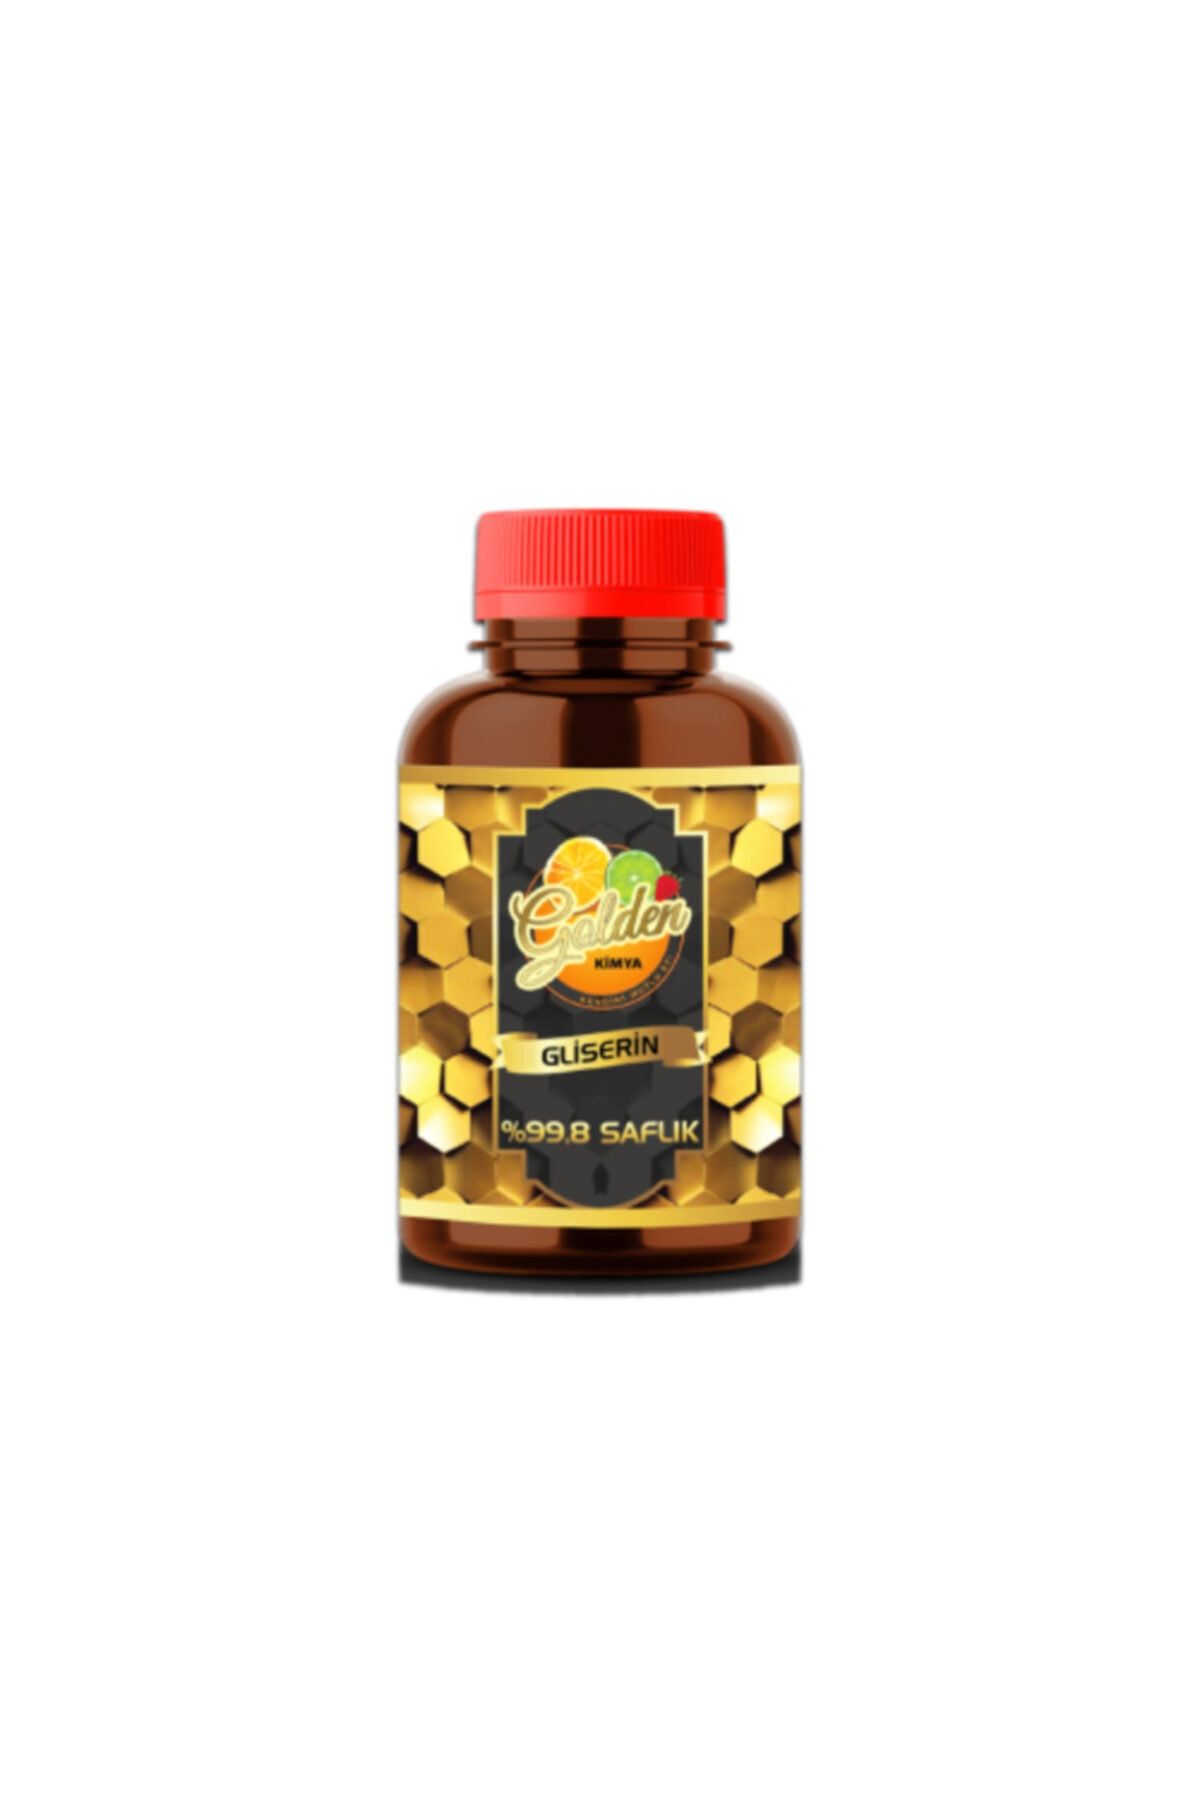 Golden Kimya 250 ml - %99.8 Saflığında Wilmar Bitkisel Gliserin - Ithal Ürün